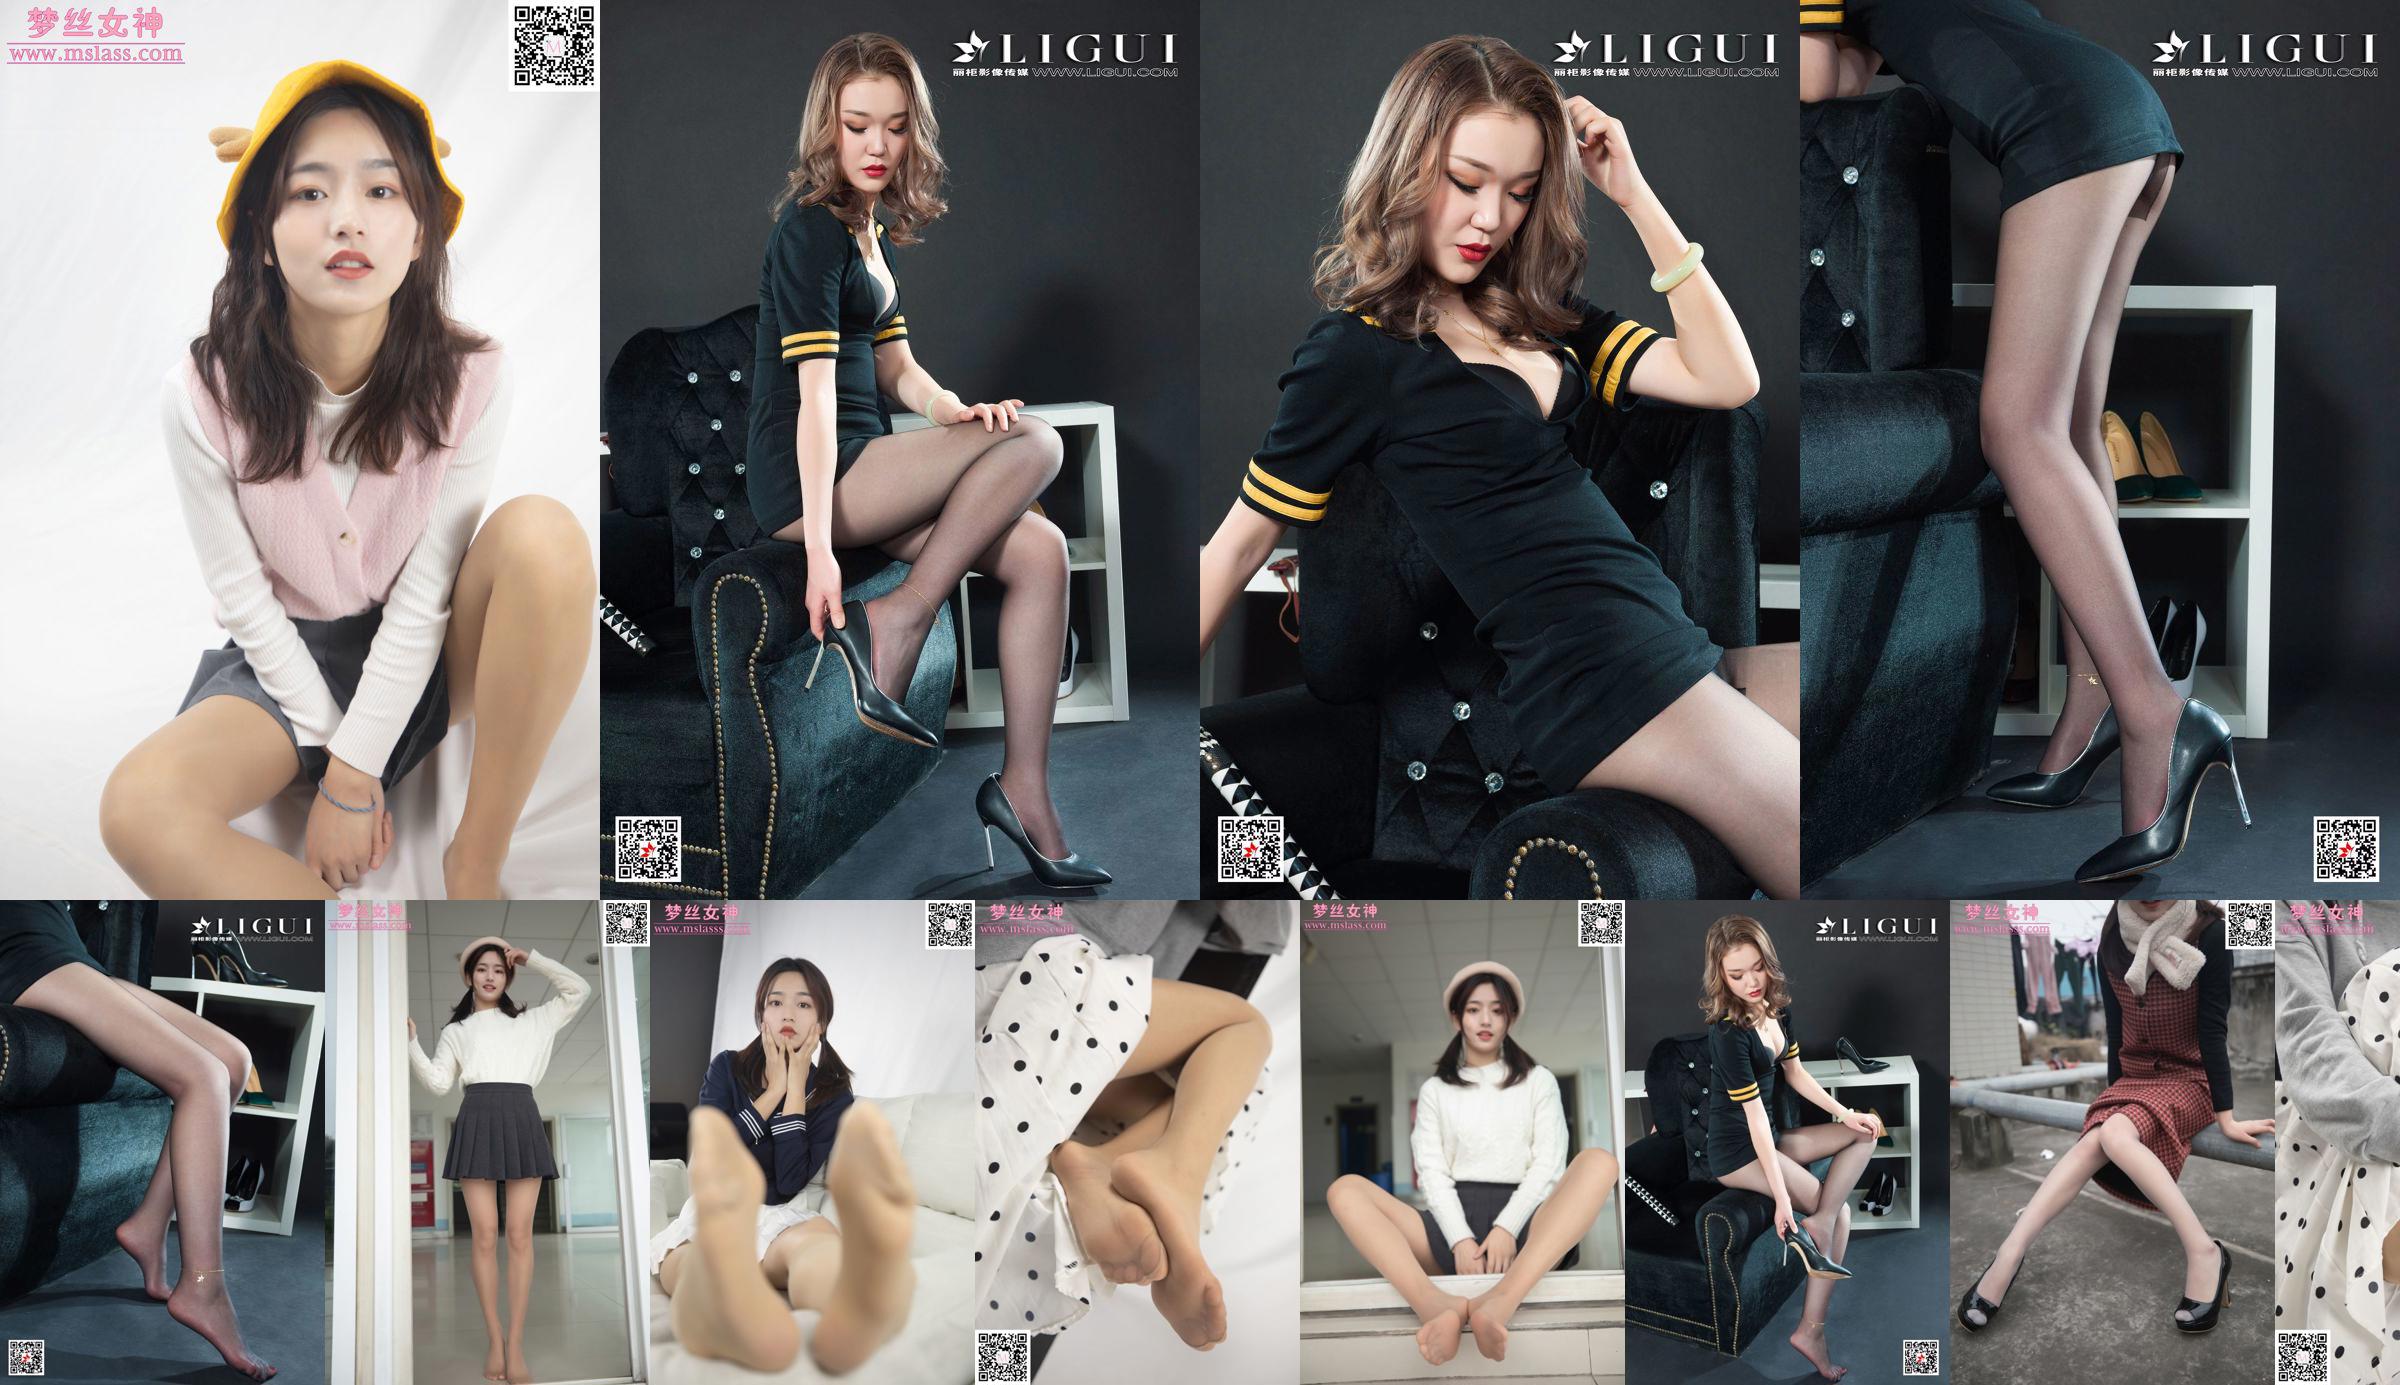 Xuanxuan Leg Người mẫu "Đồng phục tiếp viên lụa đen" [Ligui Ligui] Internet Beauty No.ae5145 Trang 23